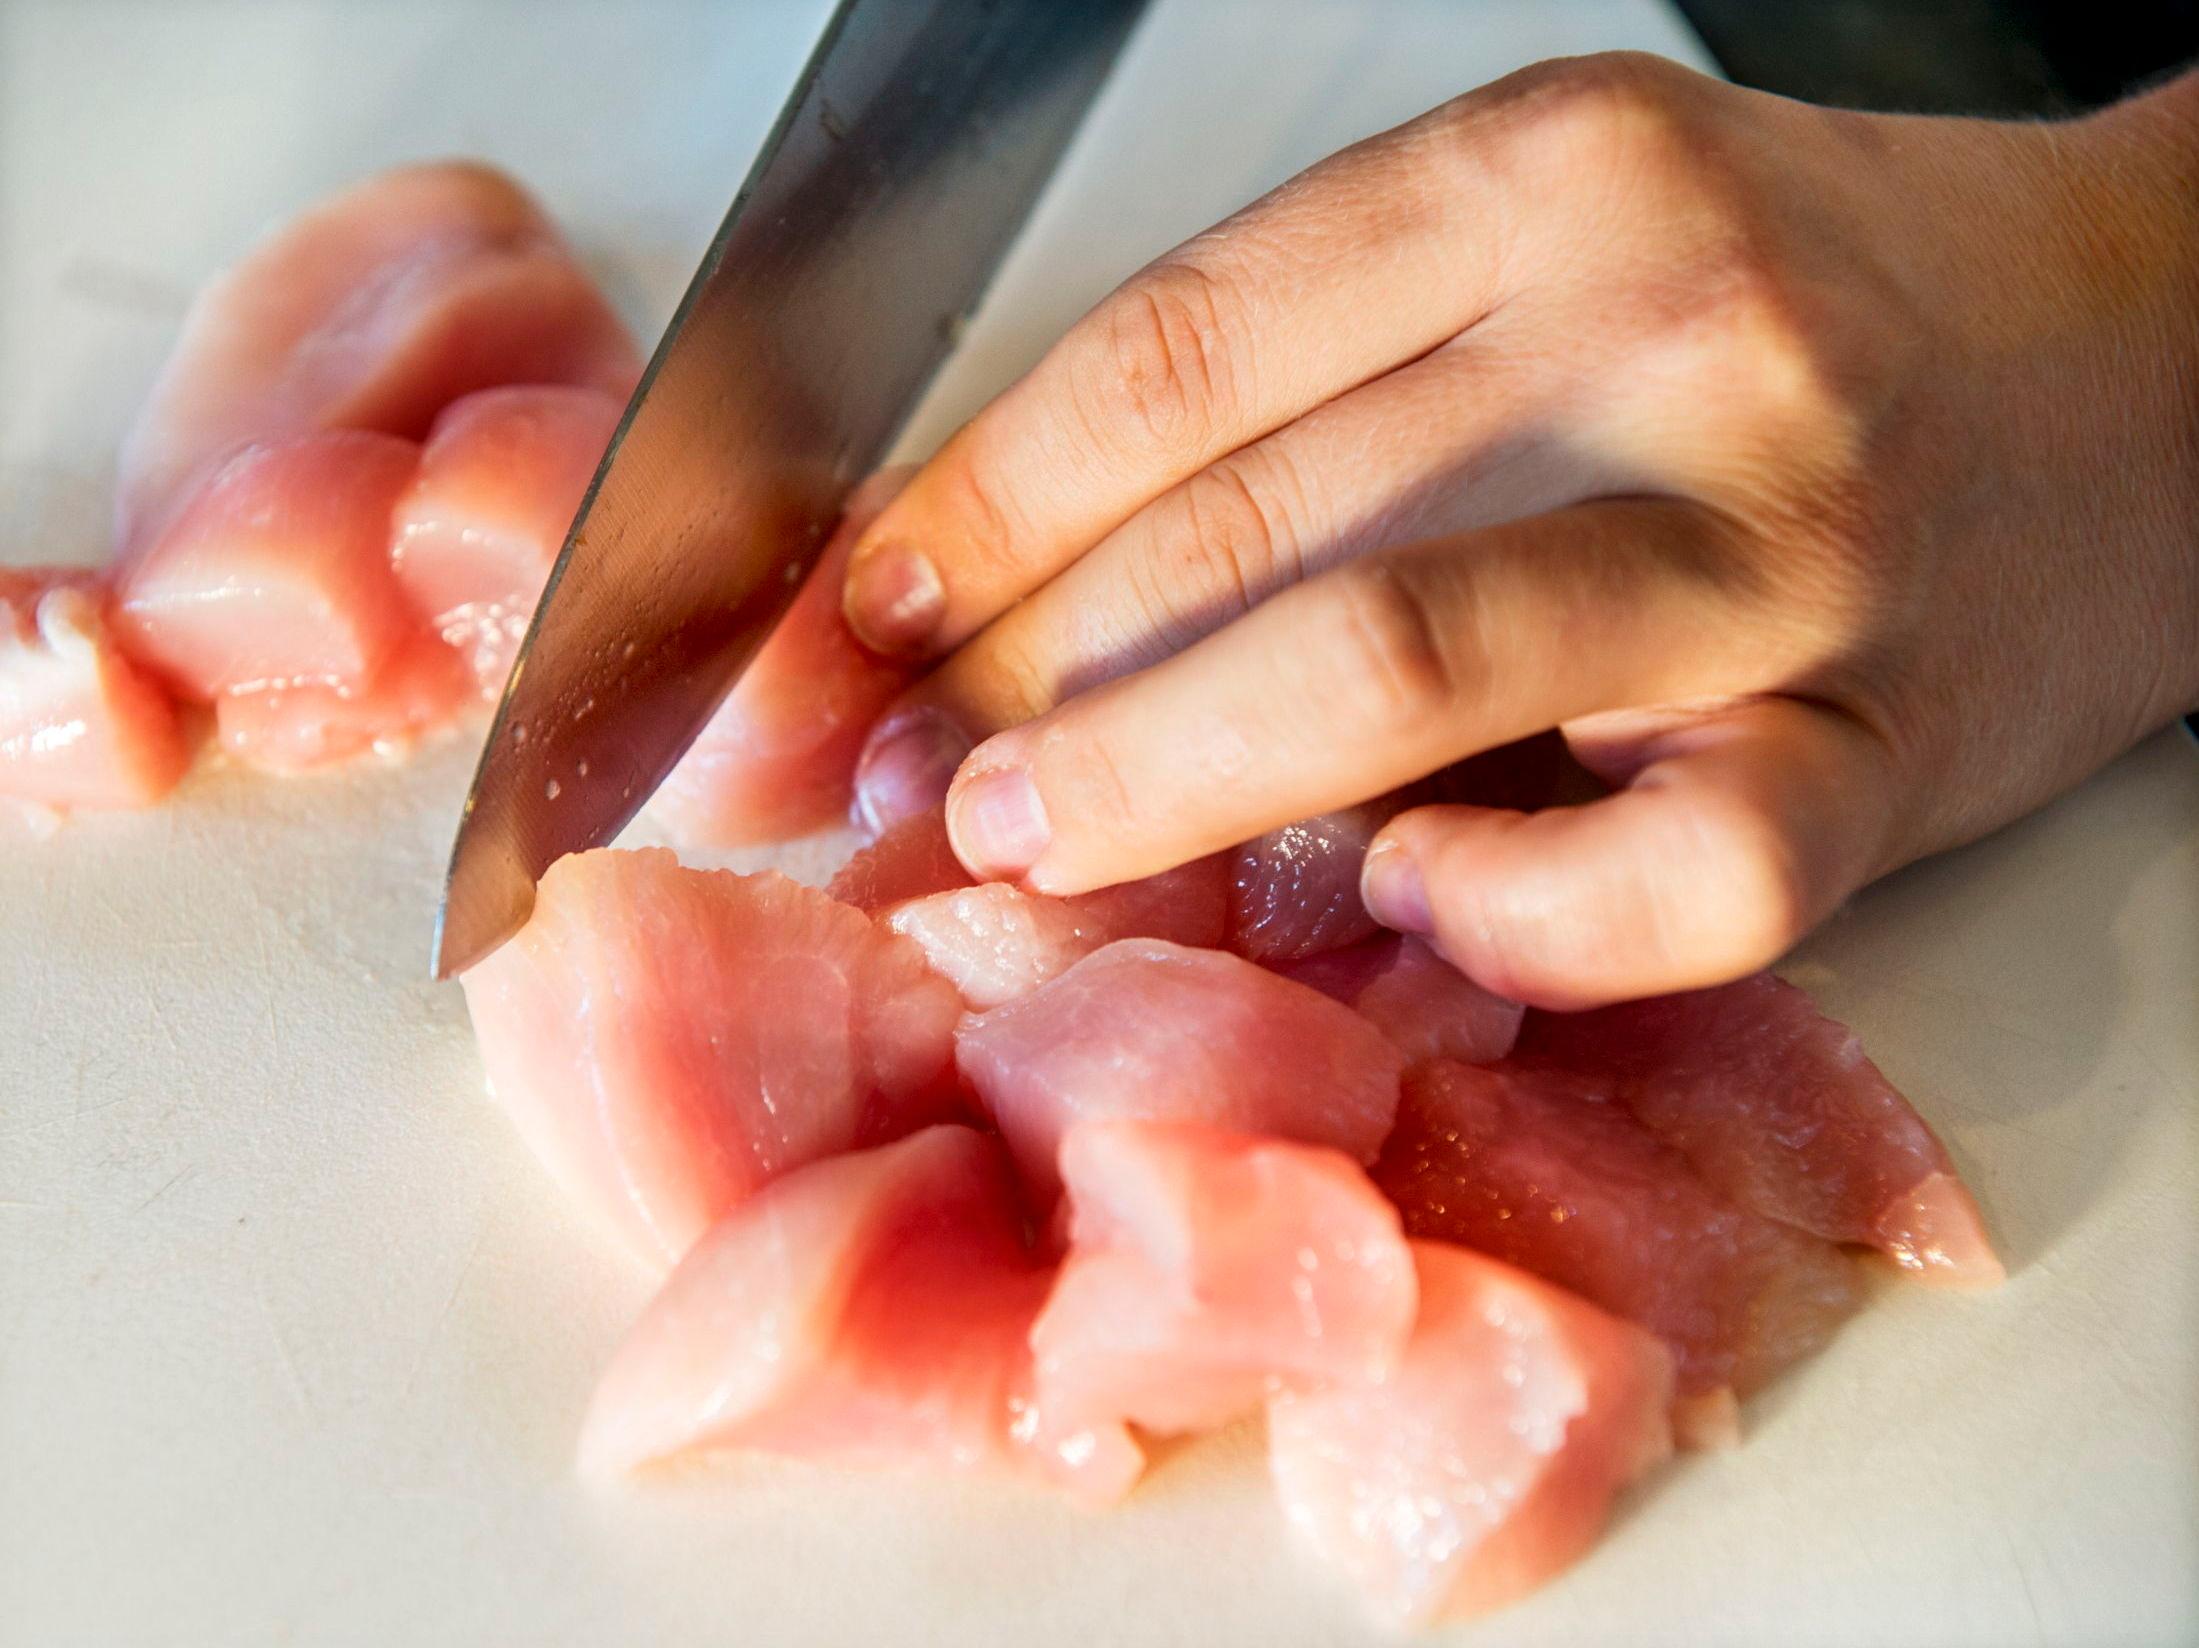 VASK HENDENE: Håndvask er viktig, særlig etter å ha tatt i rått kjøtt, som kylling. Foto: Helge Mikalsen/VG